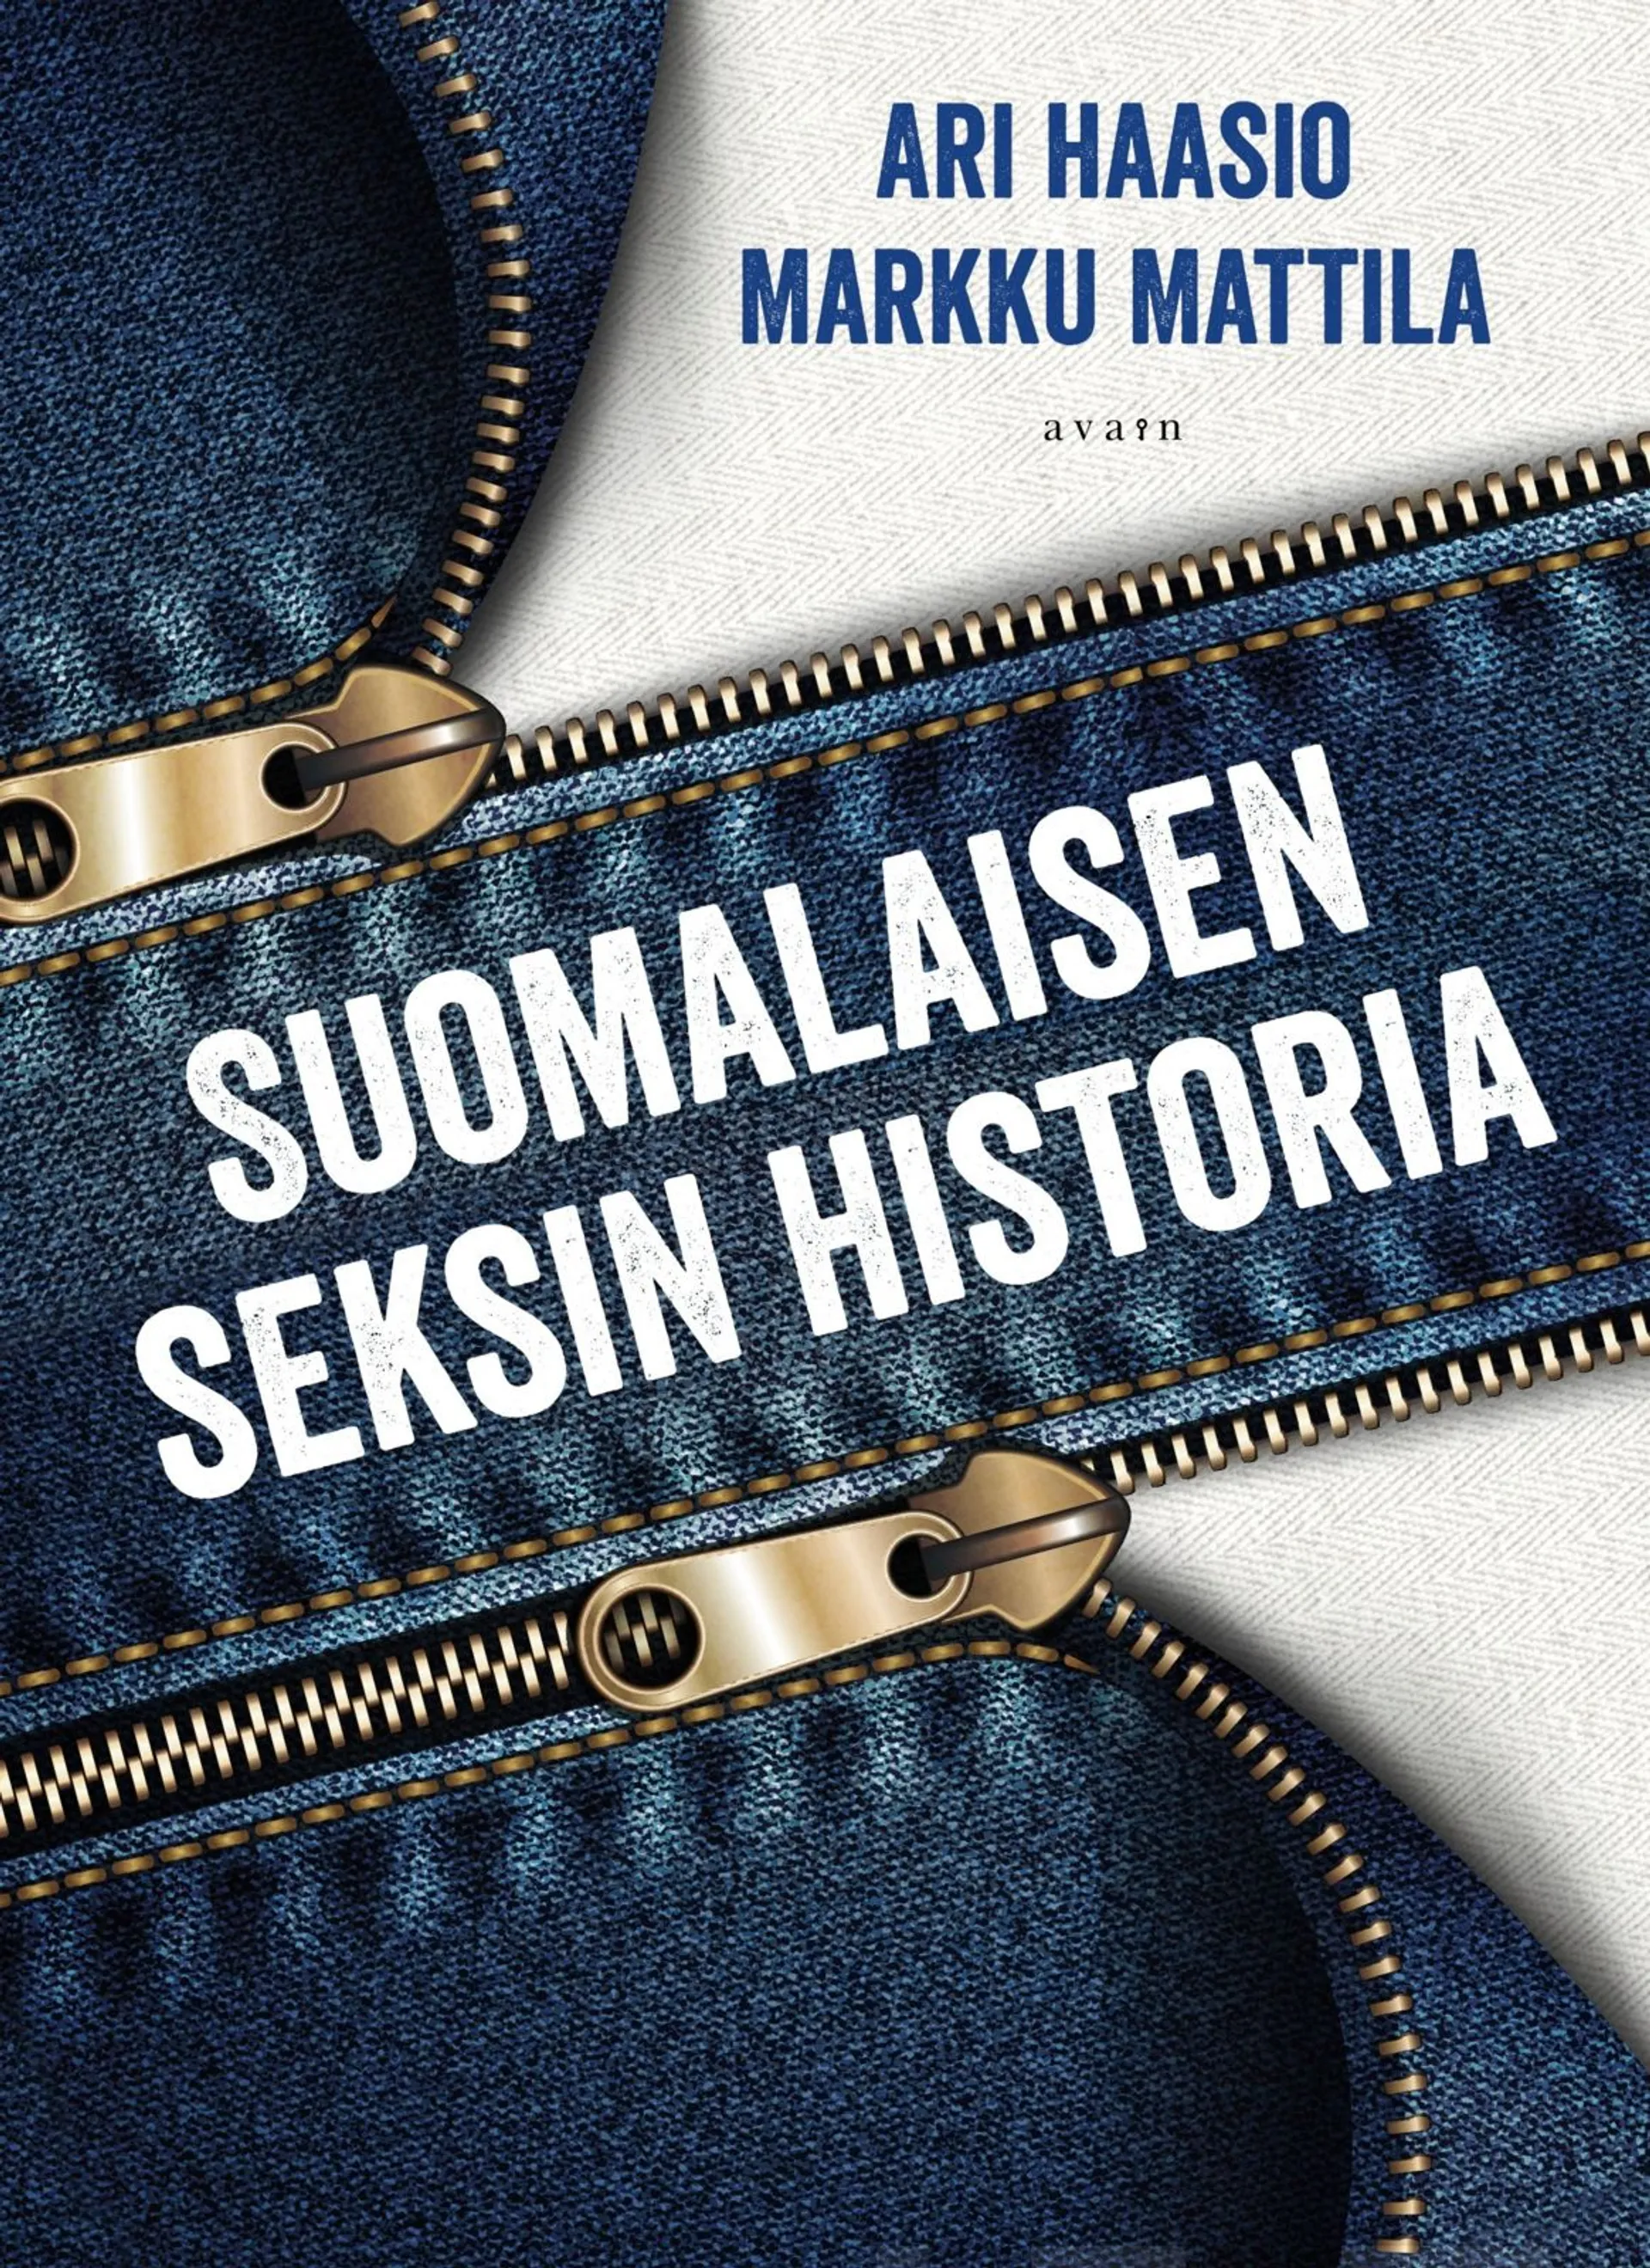 Haasio, Suomalaisen seksin historia